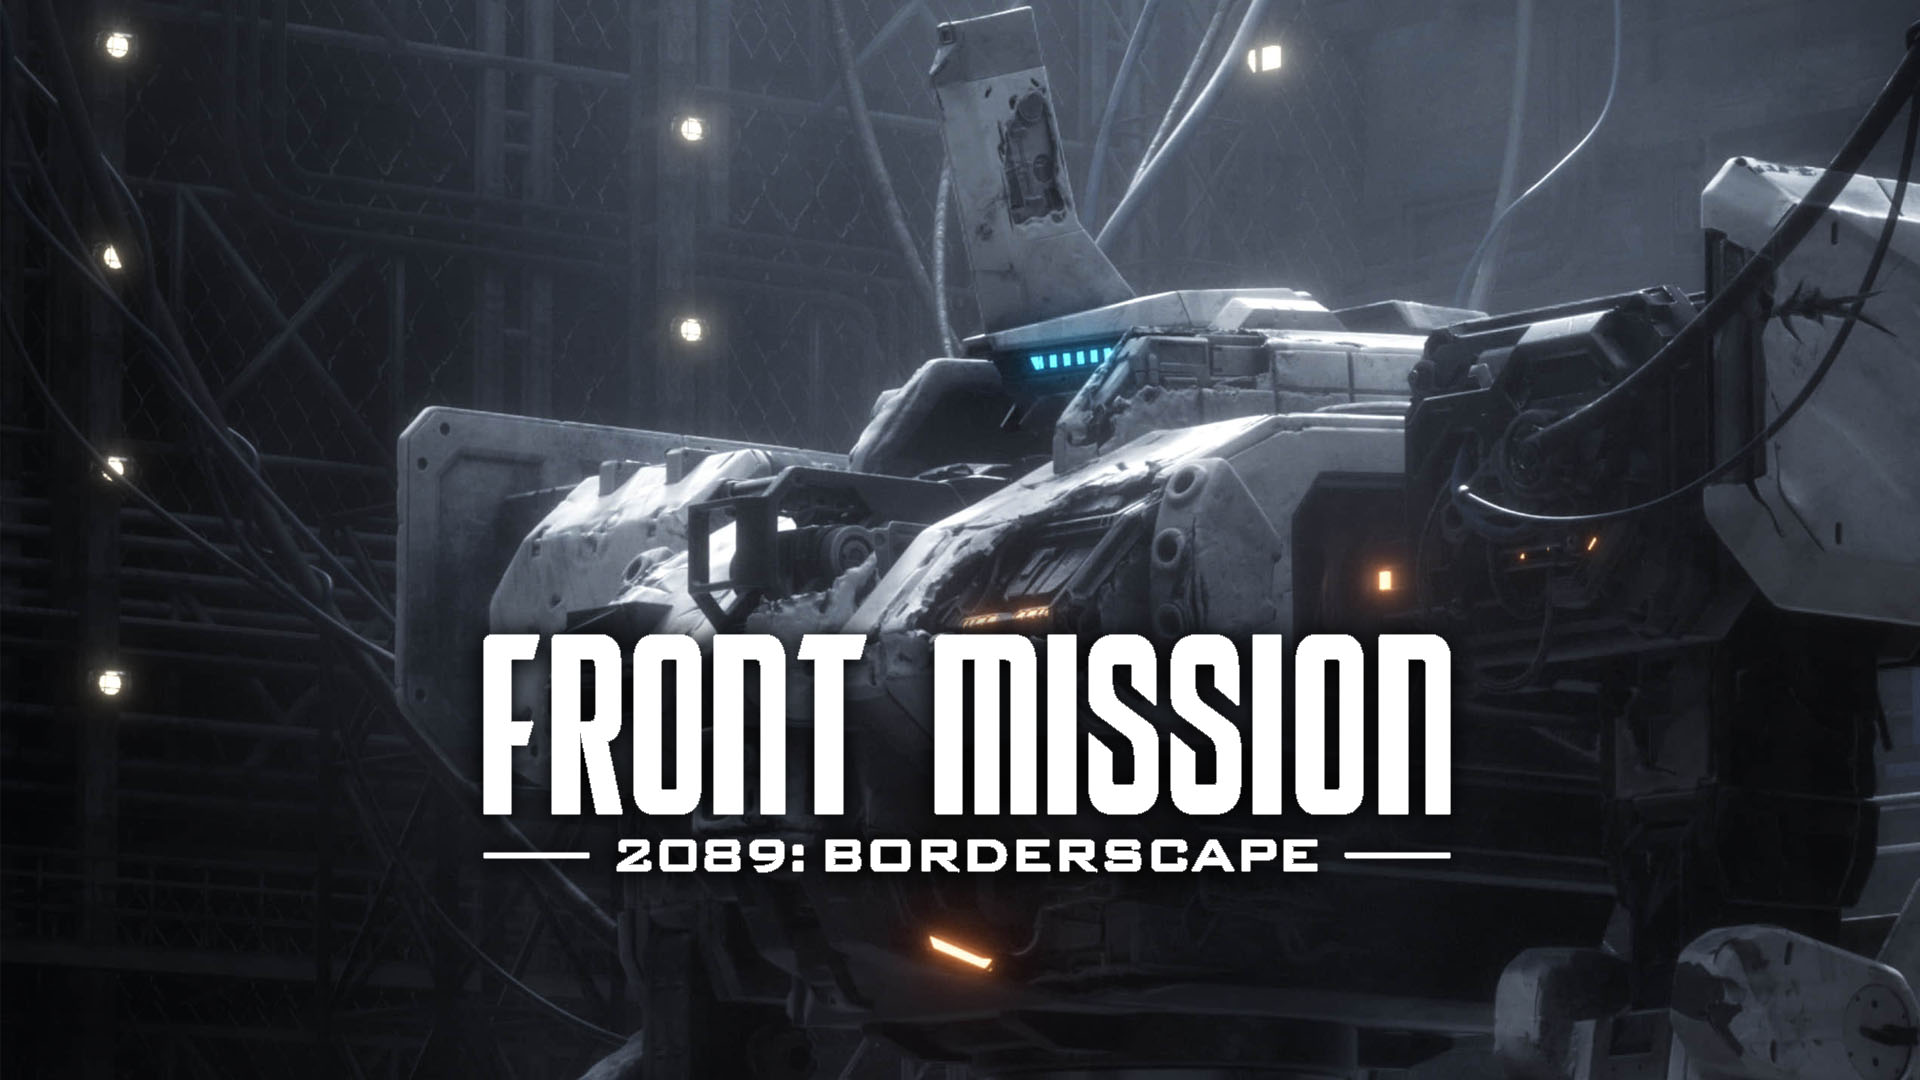 FRONT MISSION 2089: Borderscape